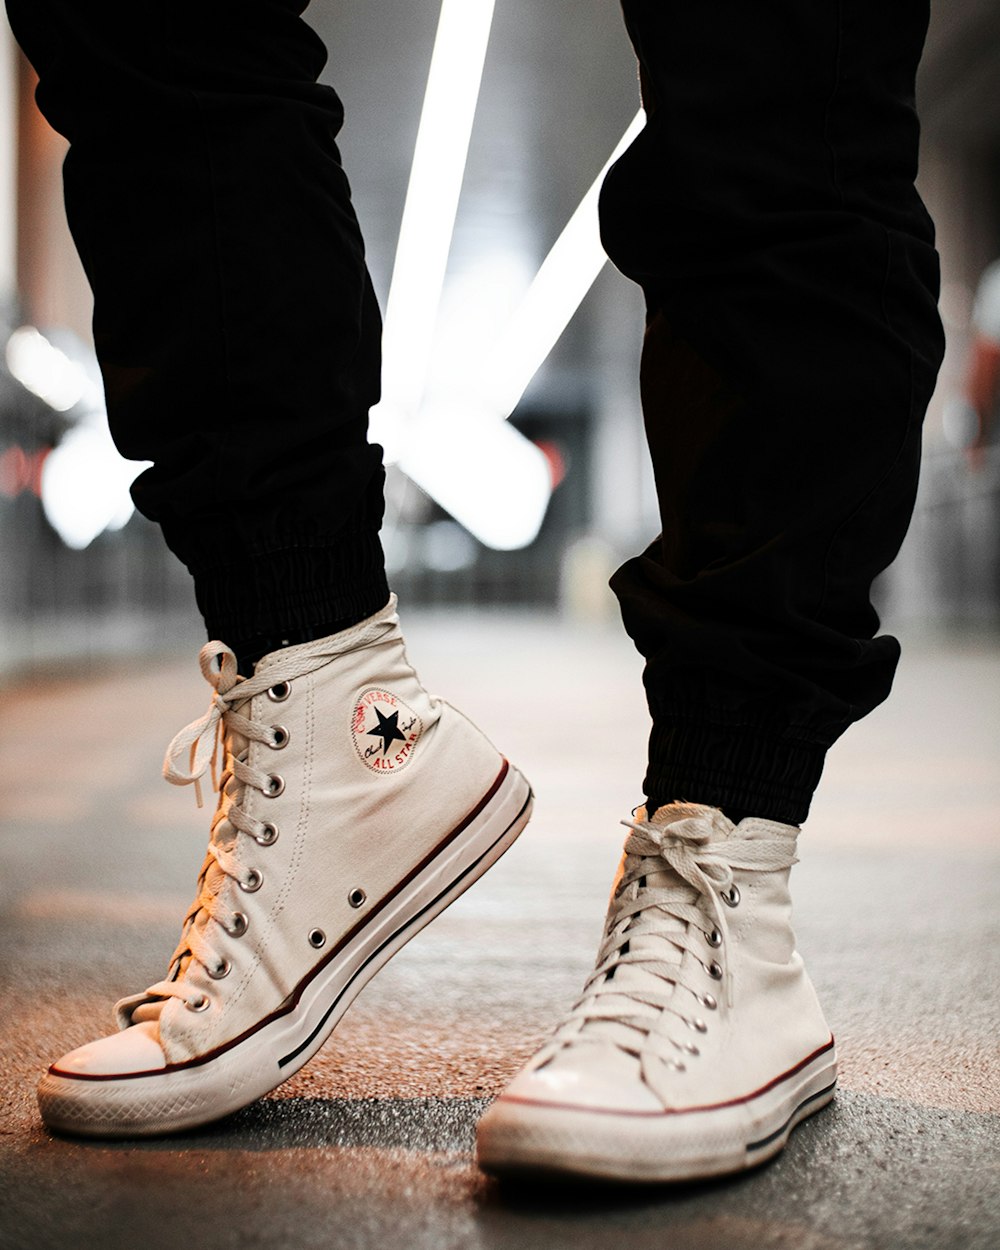 Foto Persona en zapatillas altas converse all star marrones – Imagen Dubai, emiratos unidos gratis en Unsplash